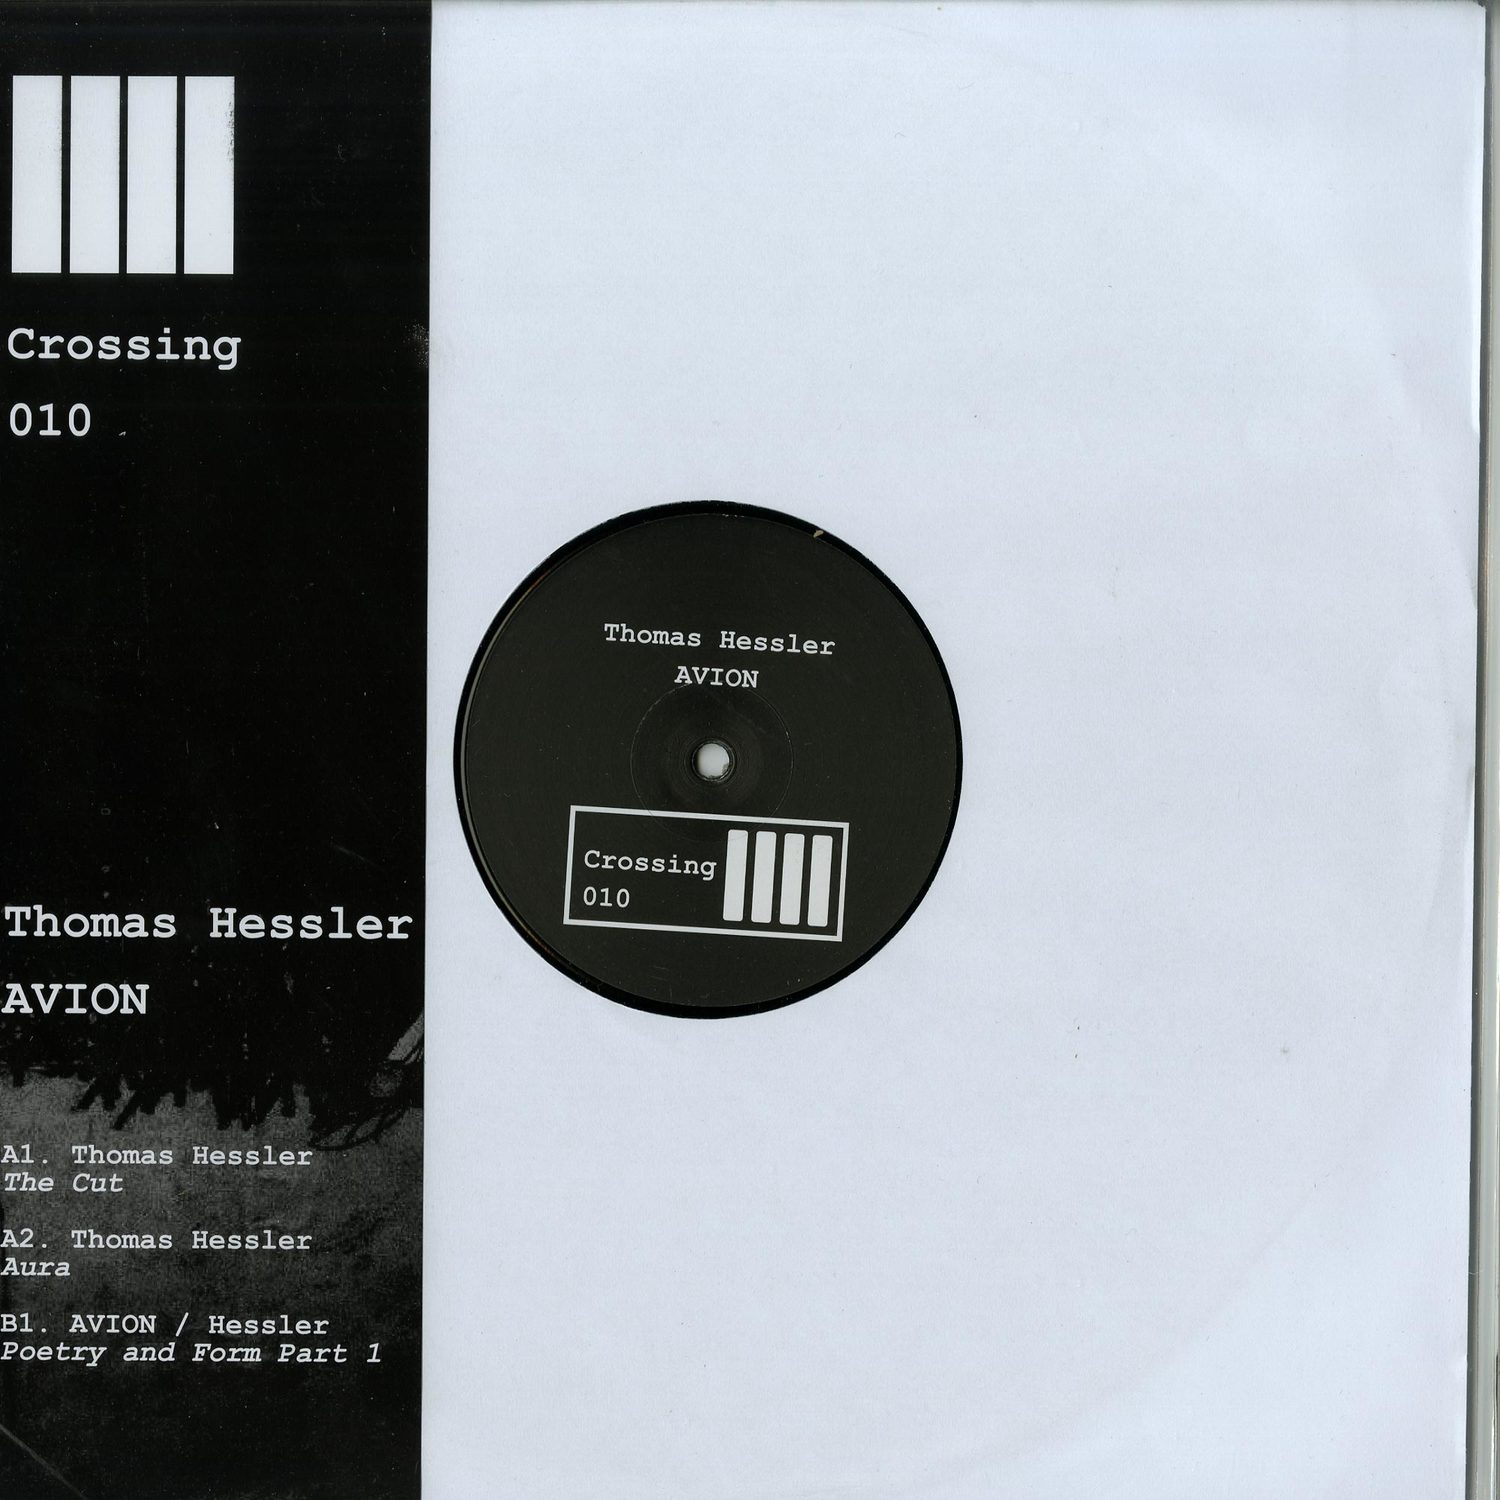 Thomas Hessler / AVION - CROSSING 010